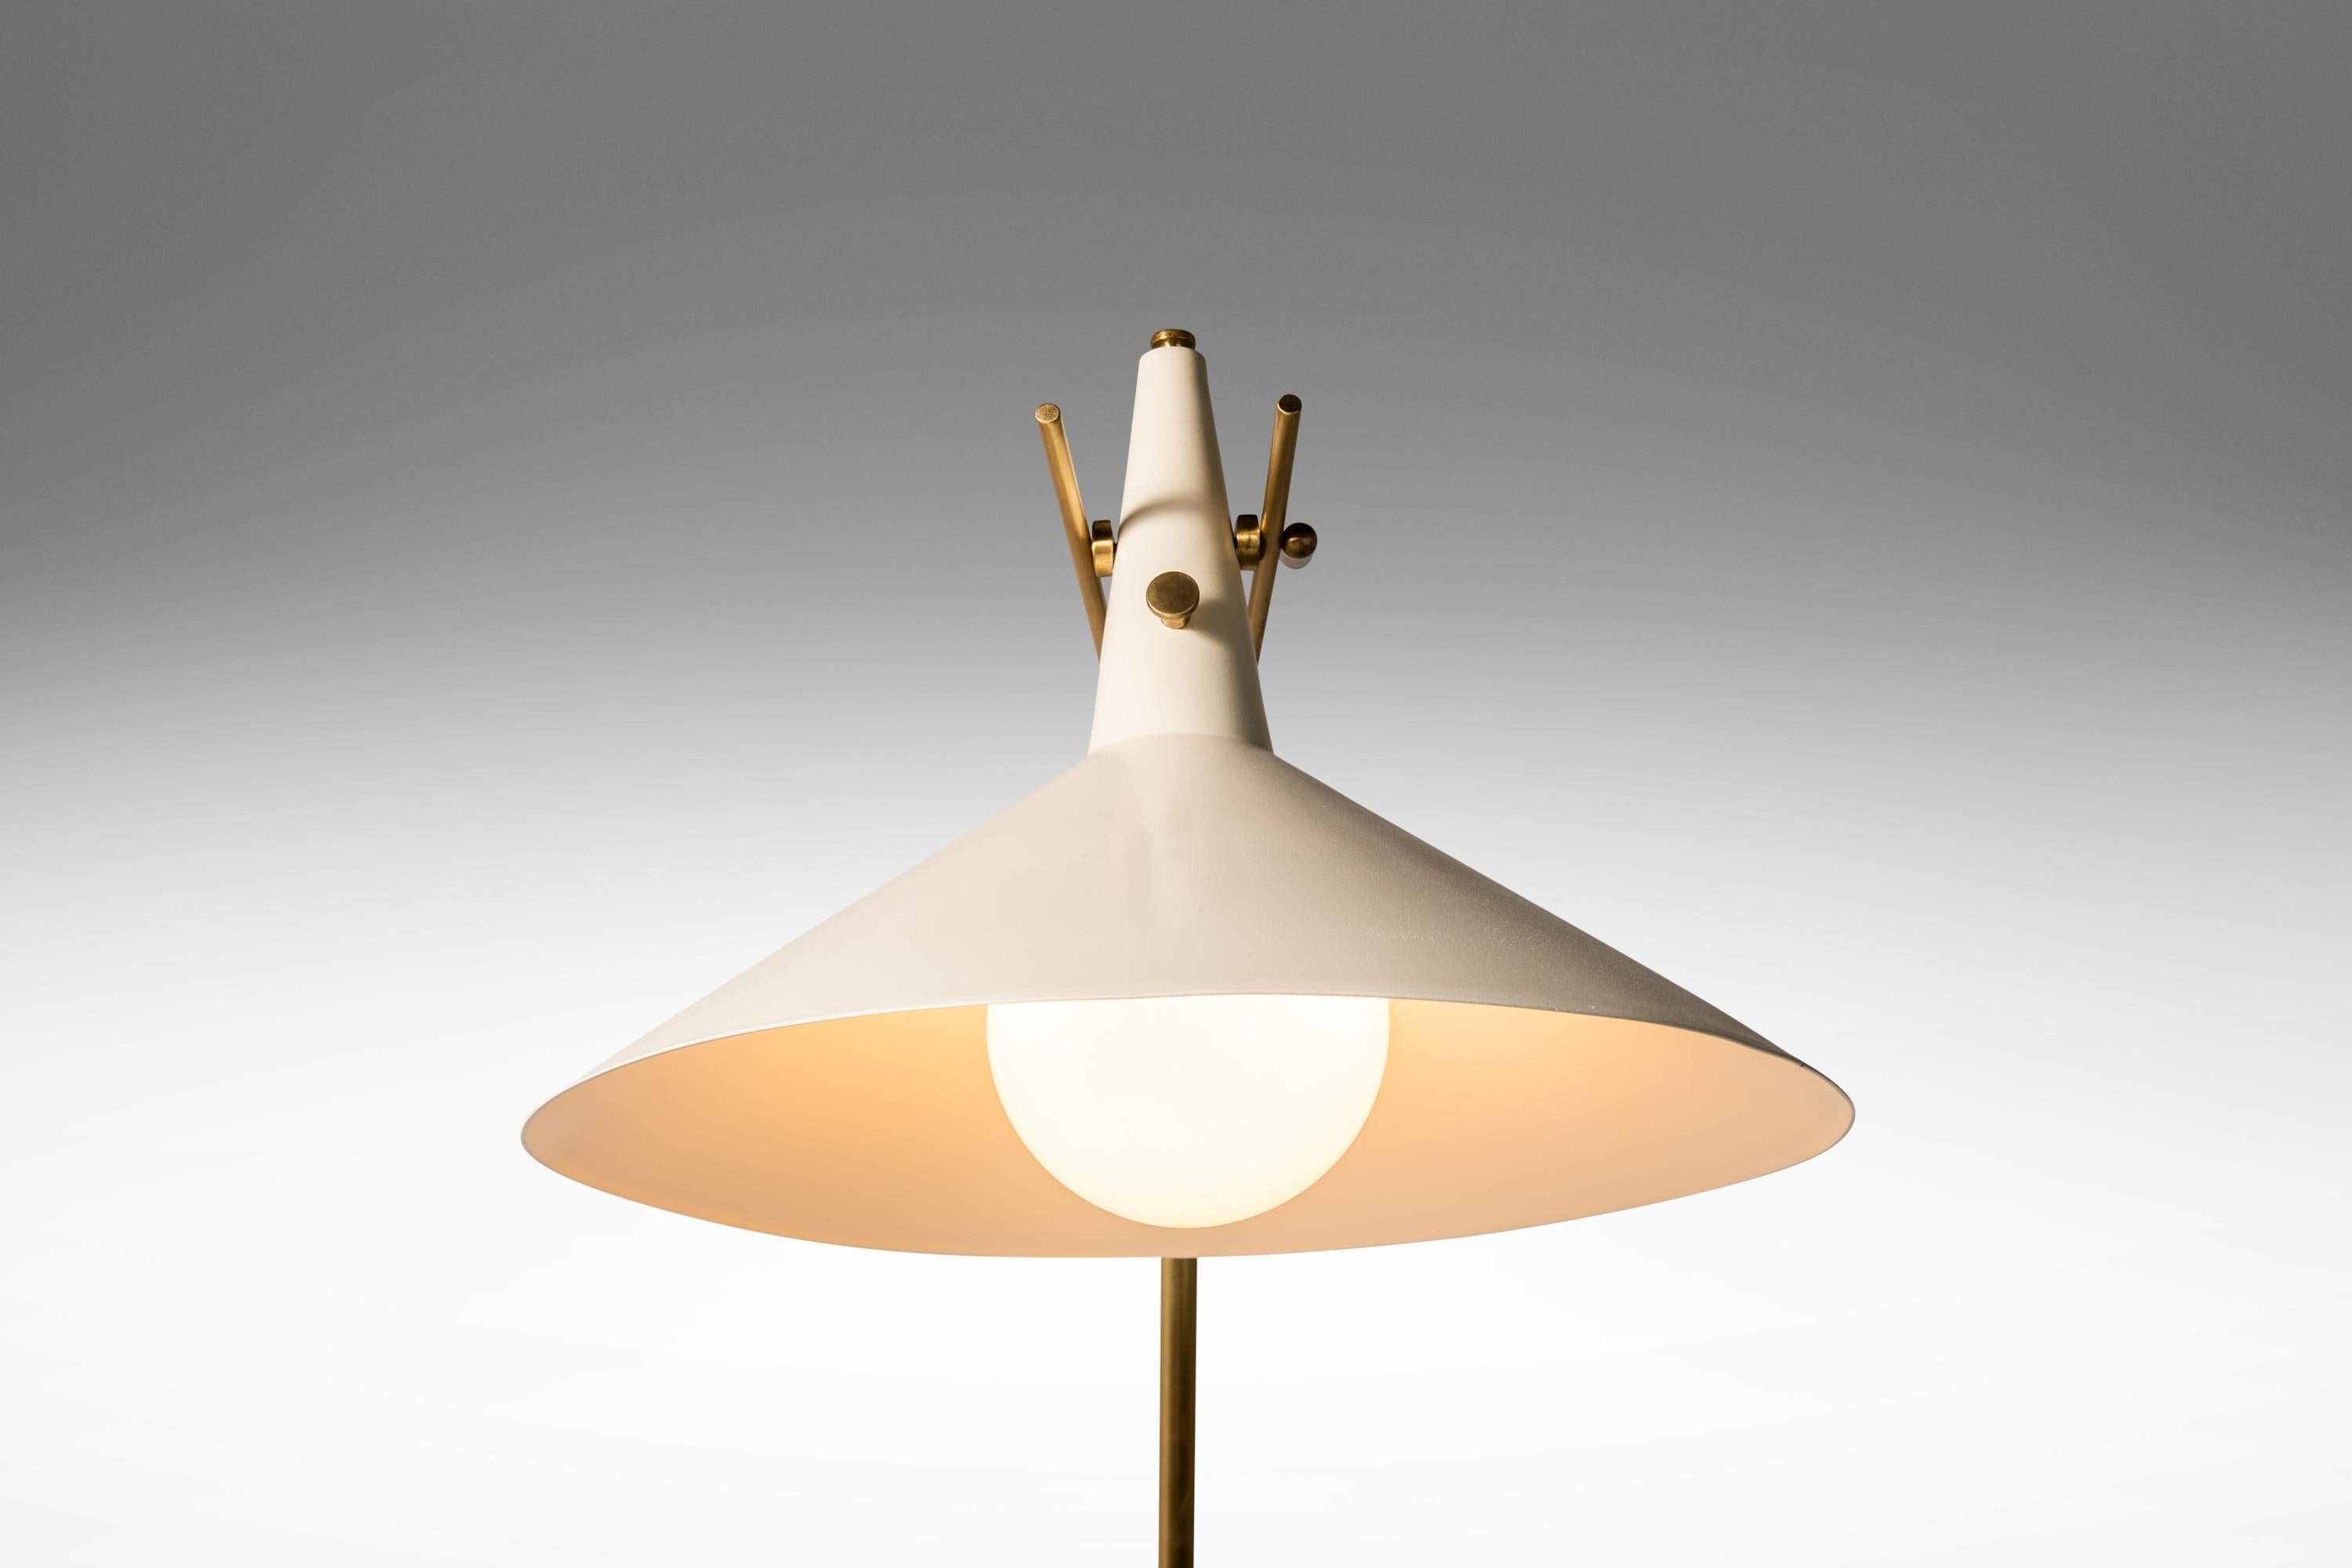  Voici une pièce unique et luxueuse d'un authentique mobilier du XXe siècle - un rare modèle de lampadaire E-11 conçu par Paul McCobb pour Directional. Cette lampe à l'architecture époustouflante est une véritable œuvre d'art et un must pour tout